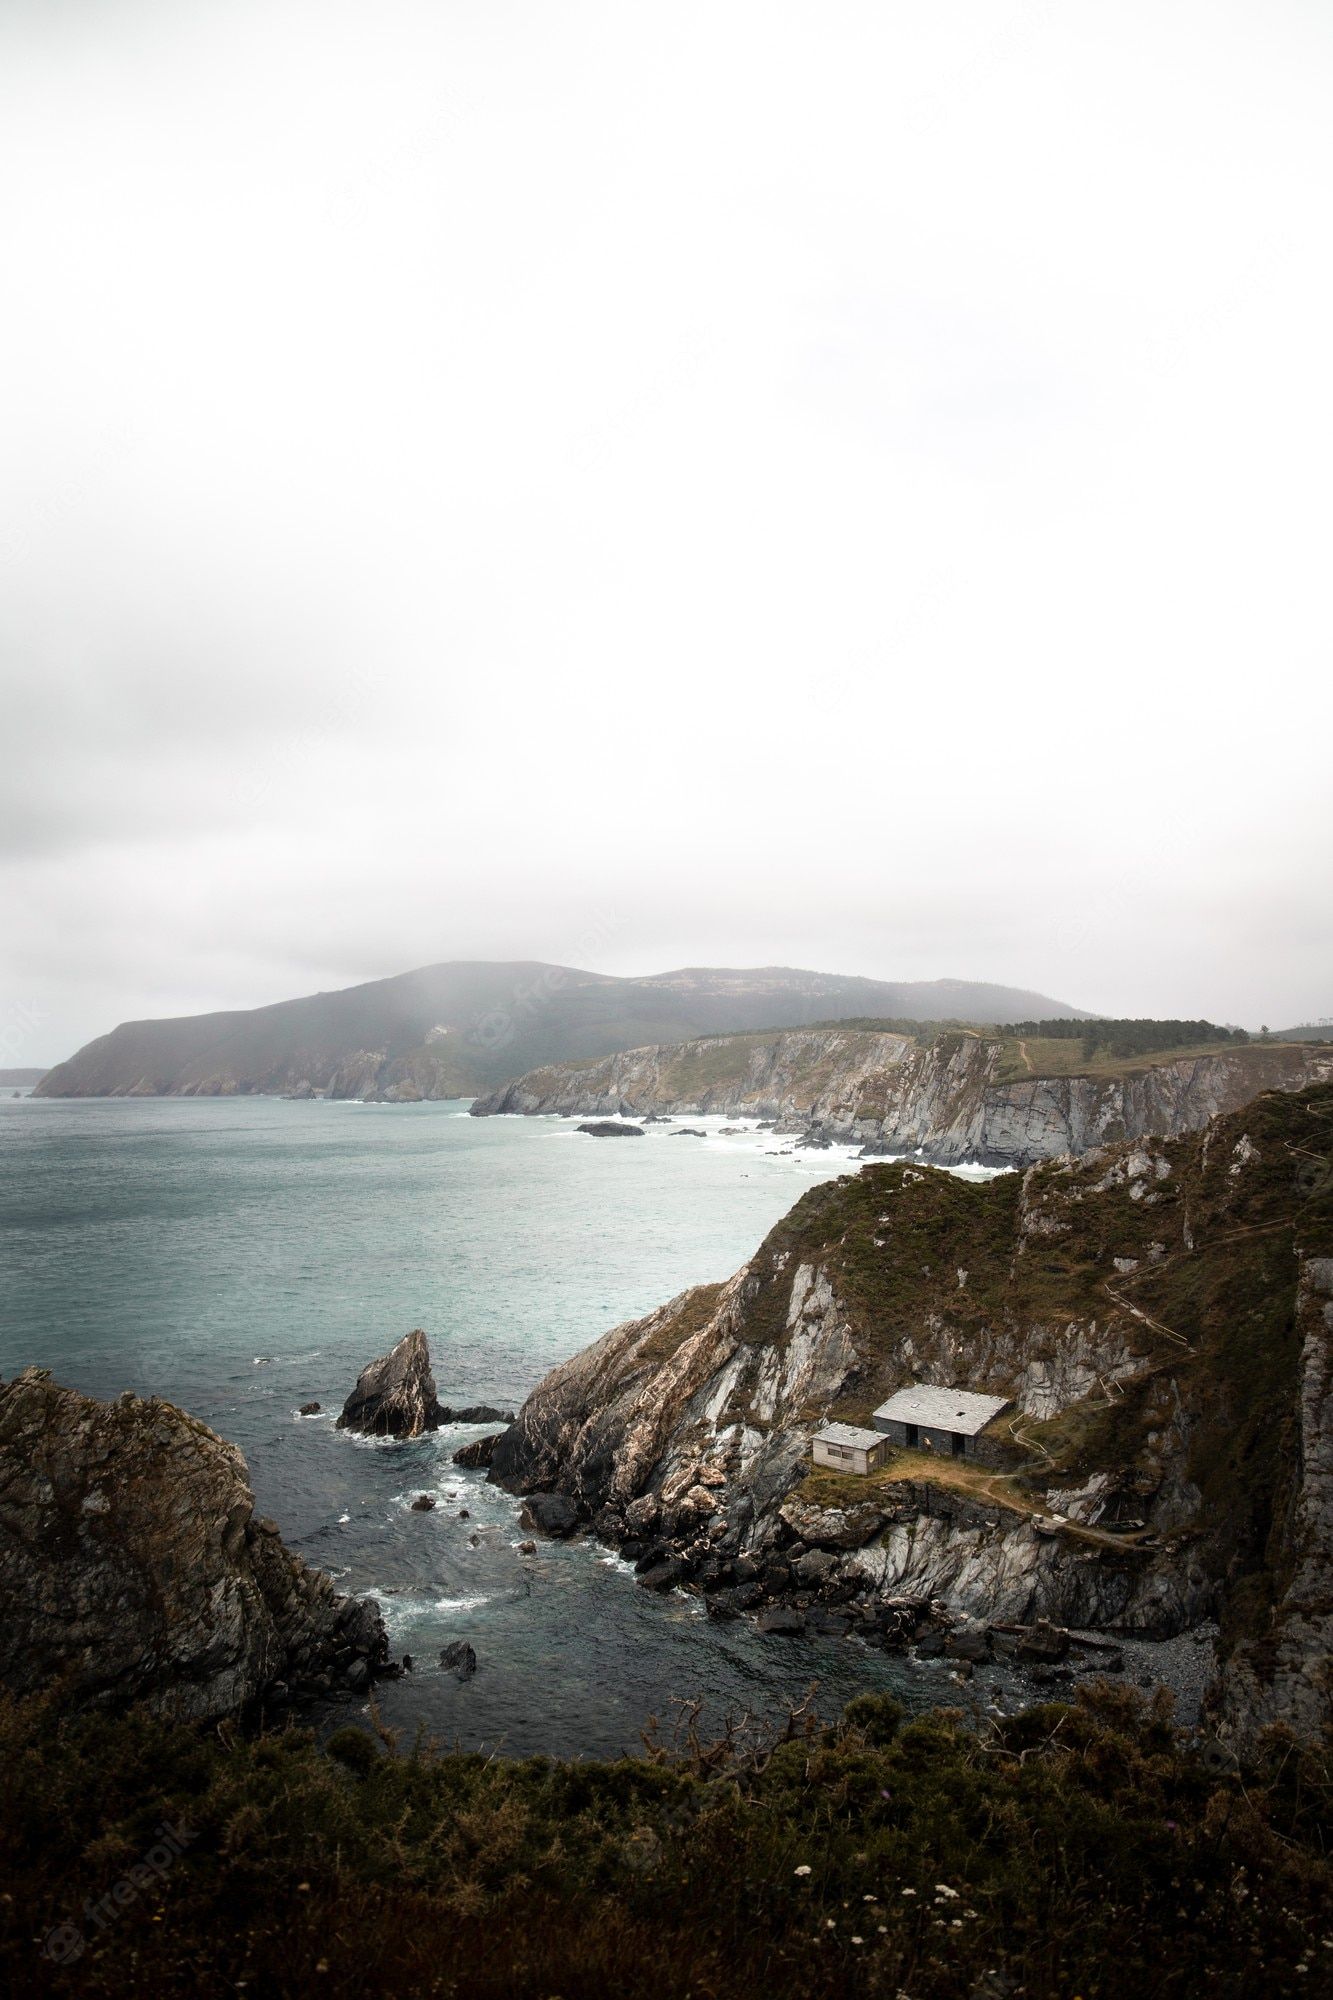  Insel Hintergrundbild 1333x2000. Galizische küste mit dramatischen klippen, inseln und blick auf den atlantik